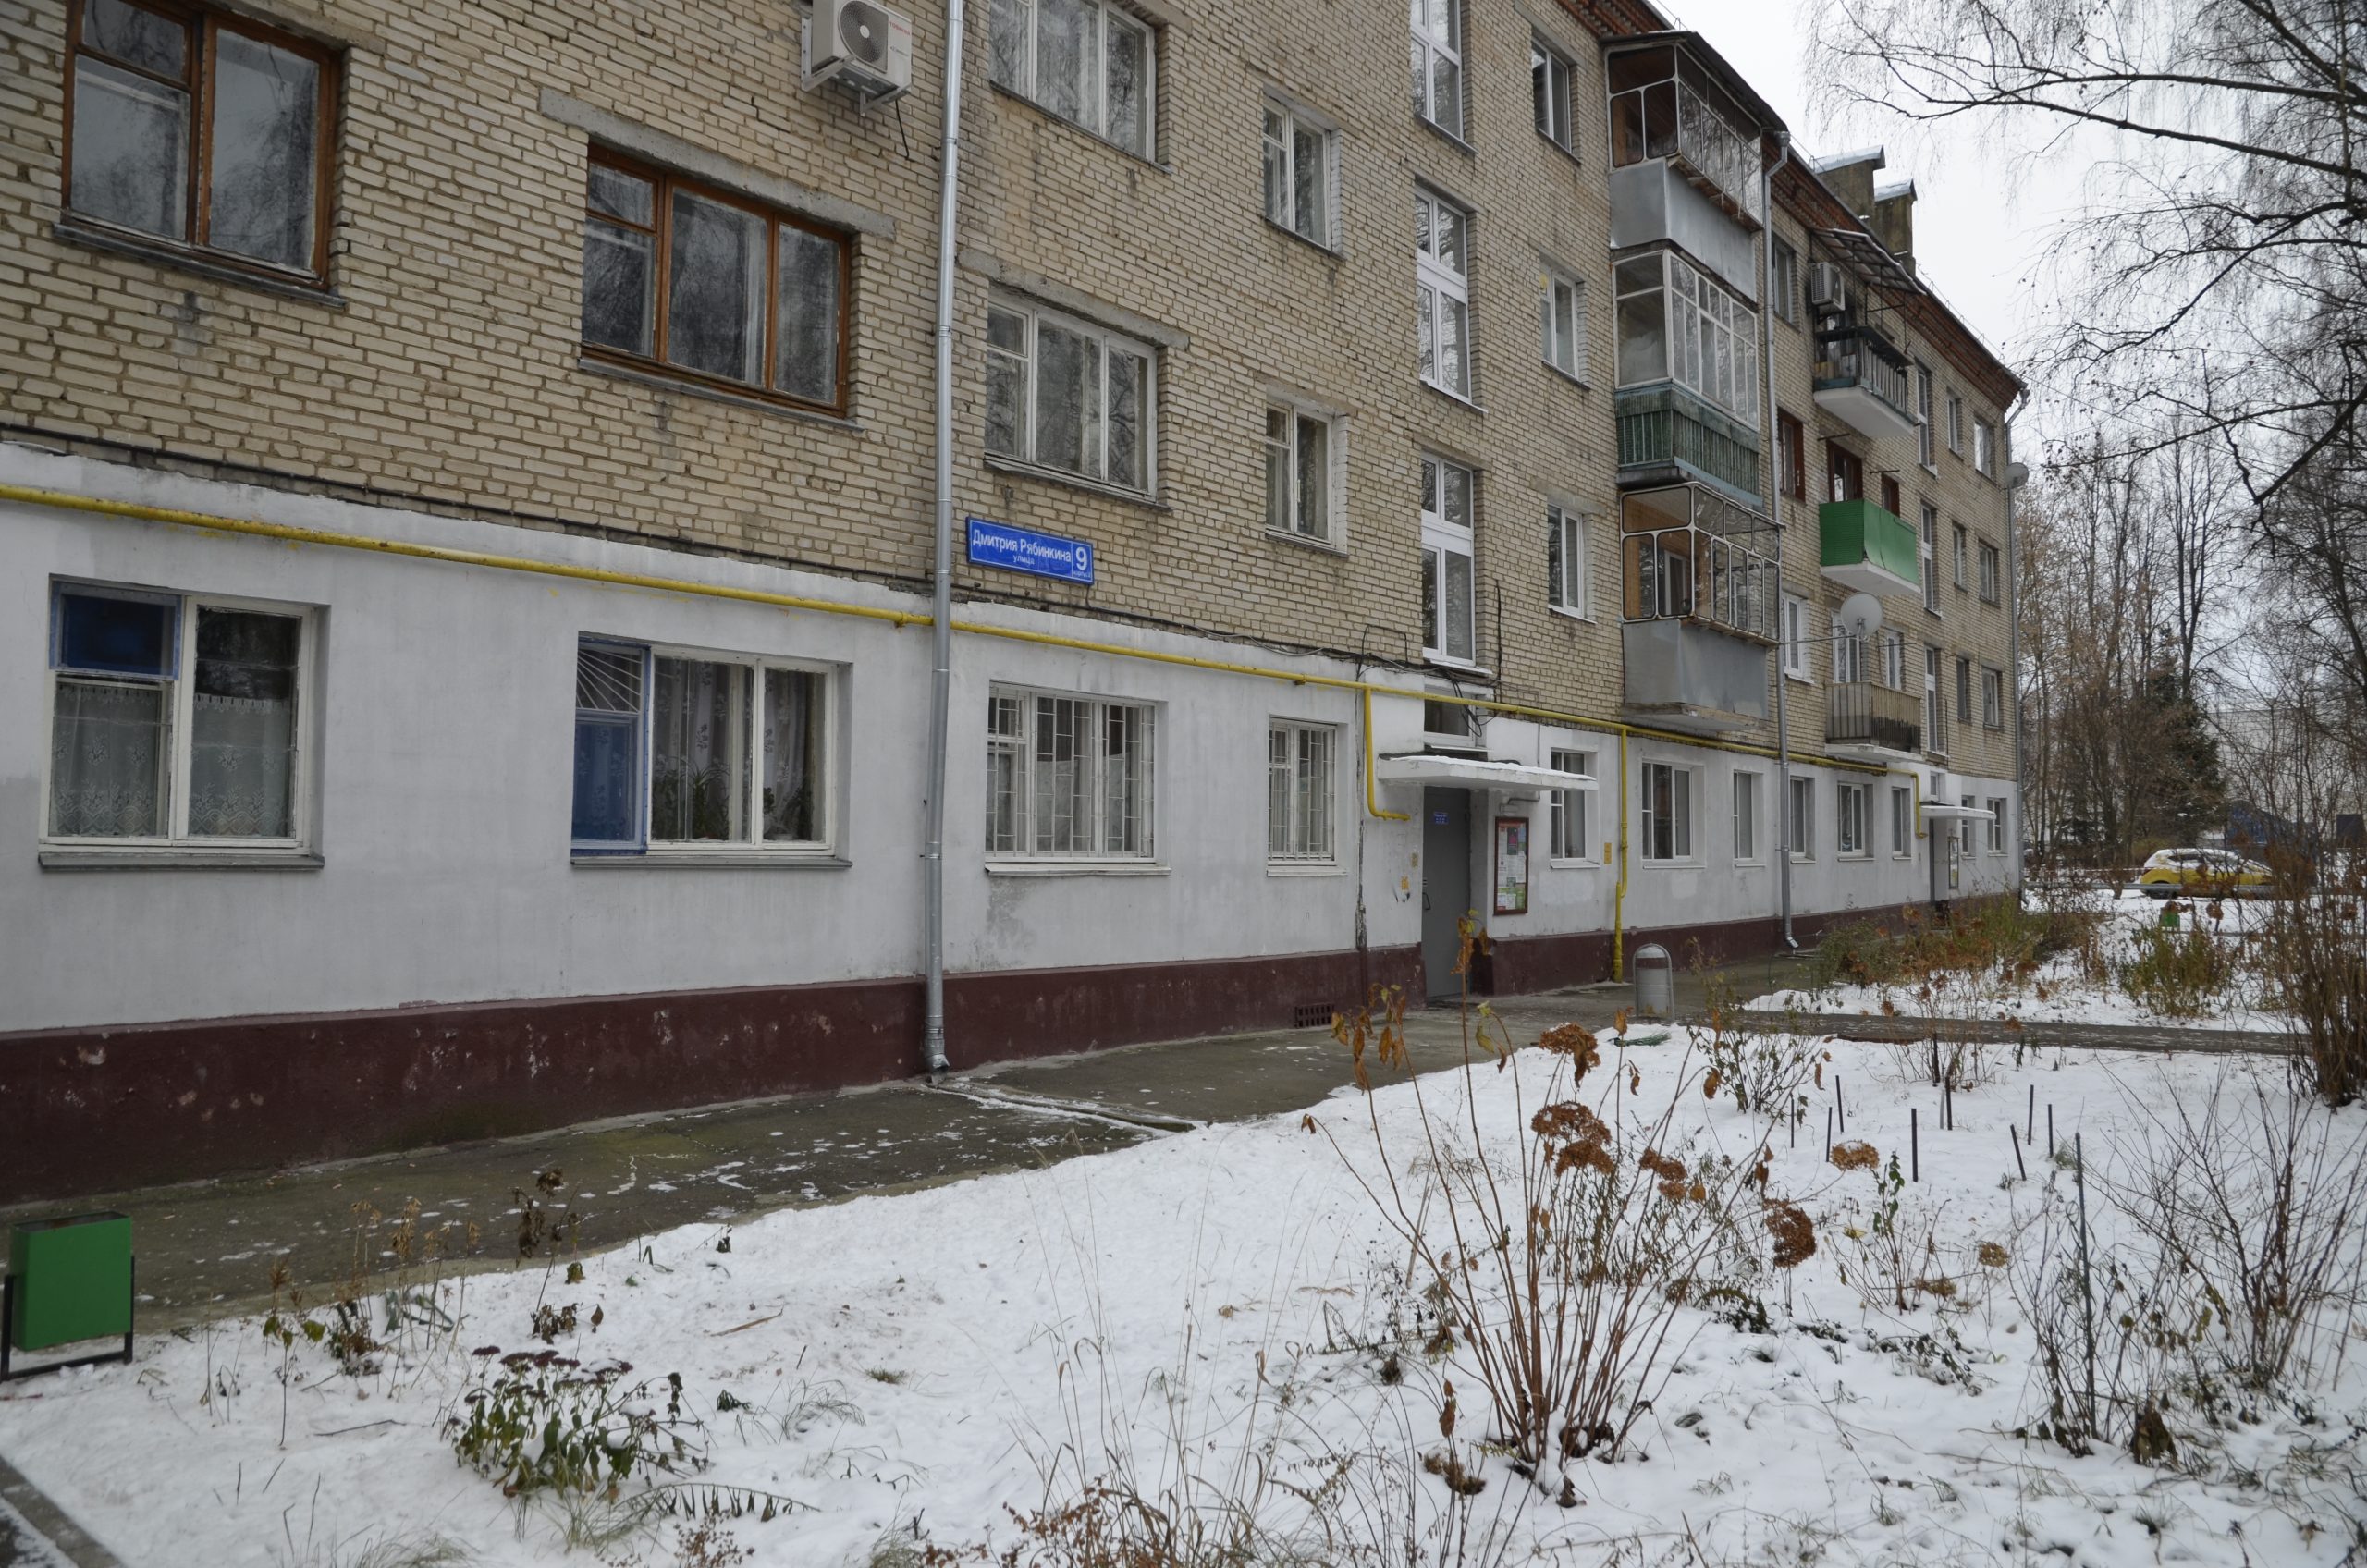 Ремонт крыш 44 домов запланировали в Новой Москве